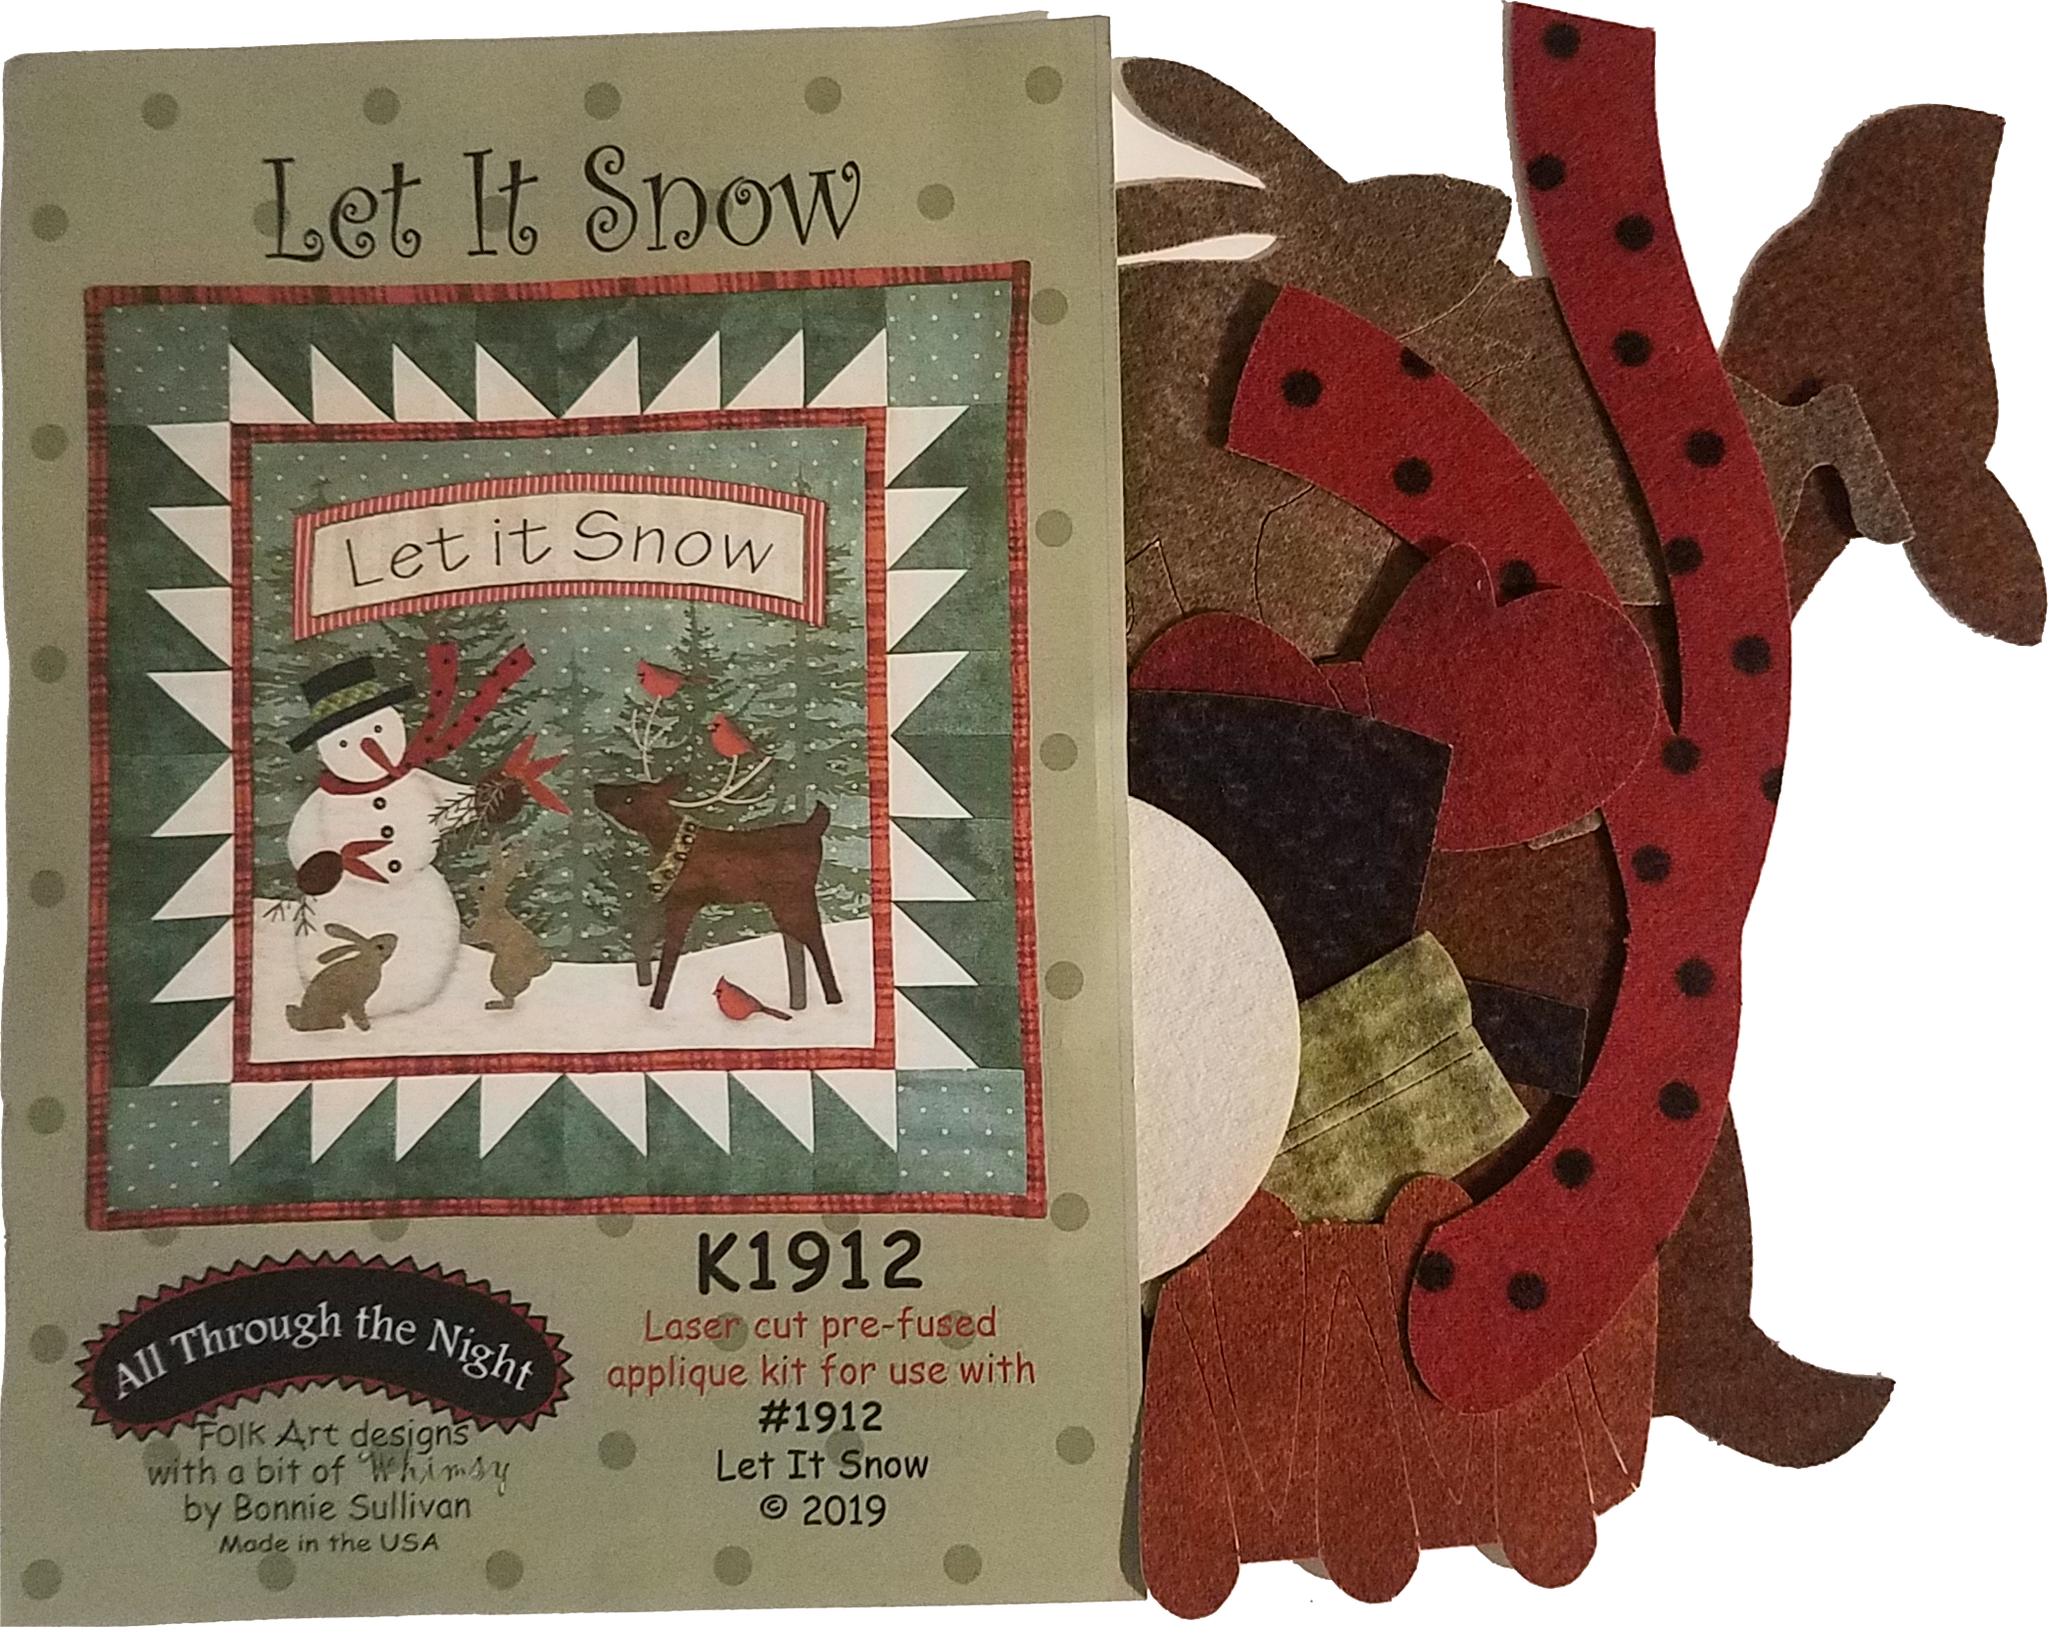 KA1912 Let It Snow! Applique Kit